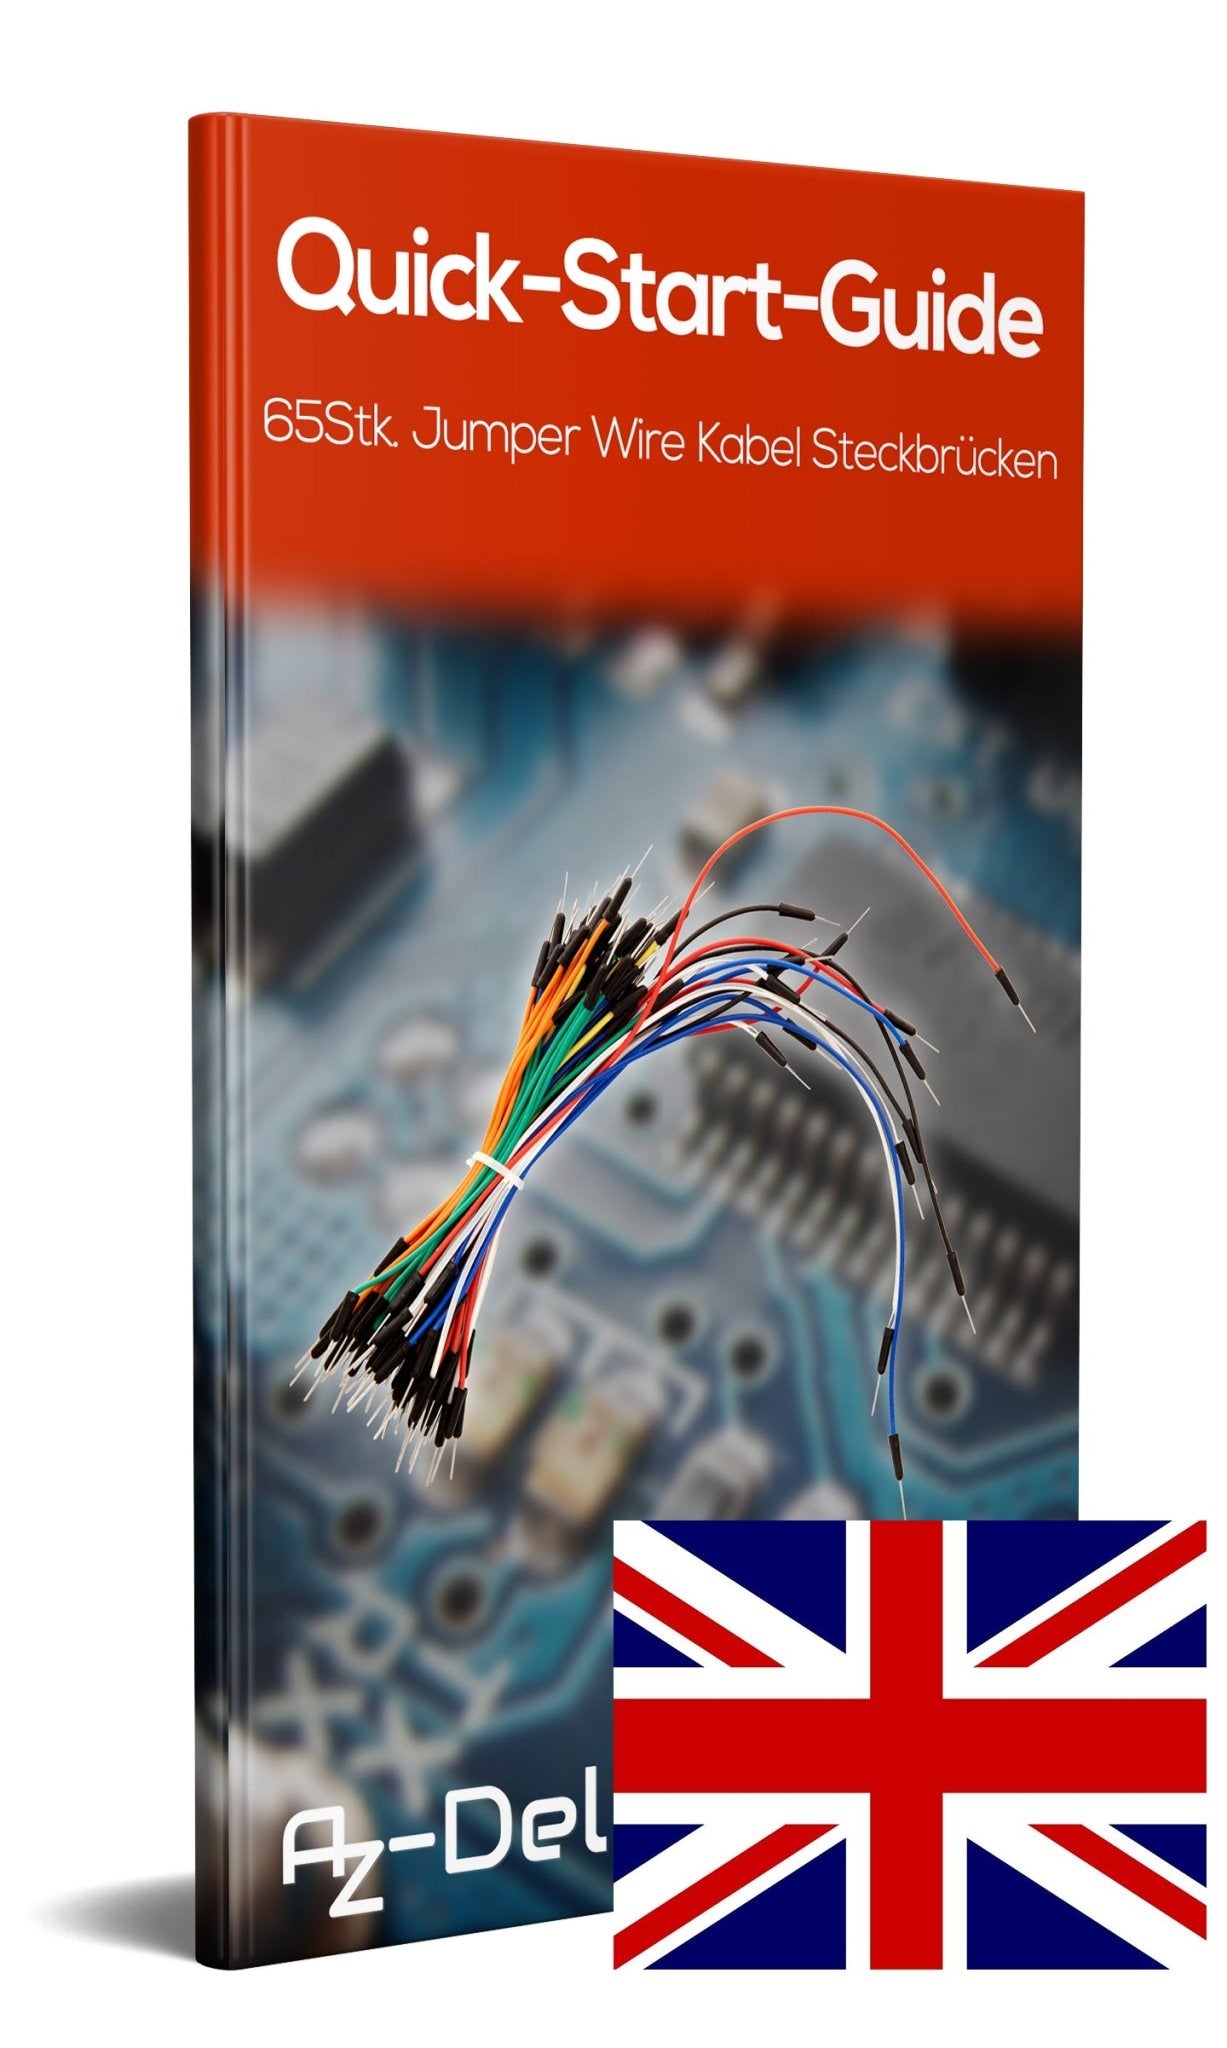 65Stk. Jumper Wire Kabel Steckbrücken für Breadboard, Steckbrett